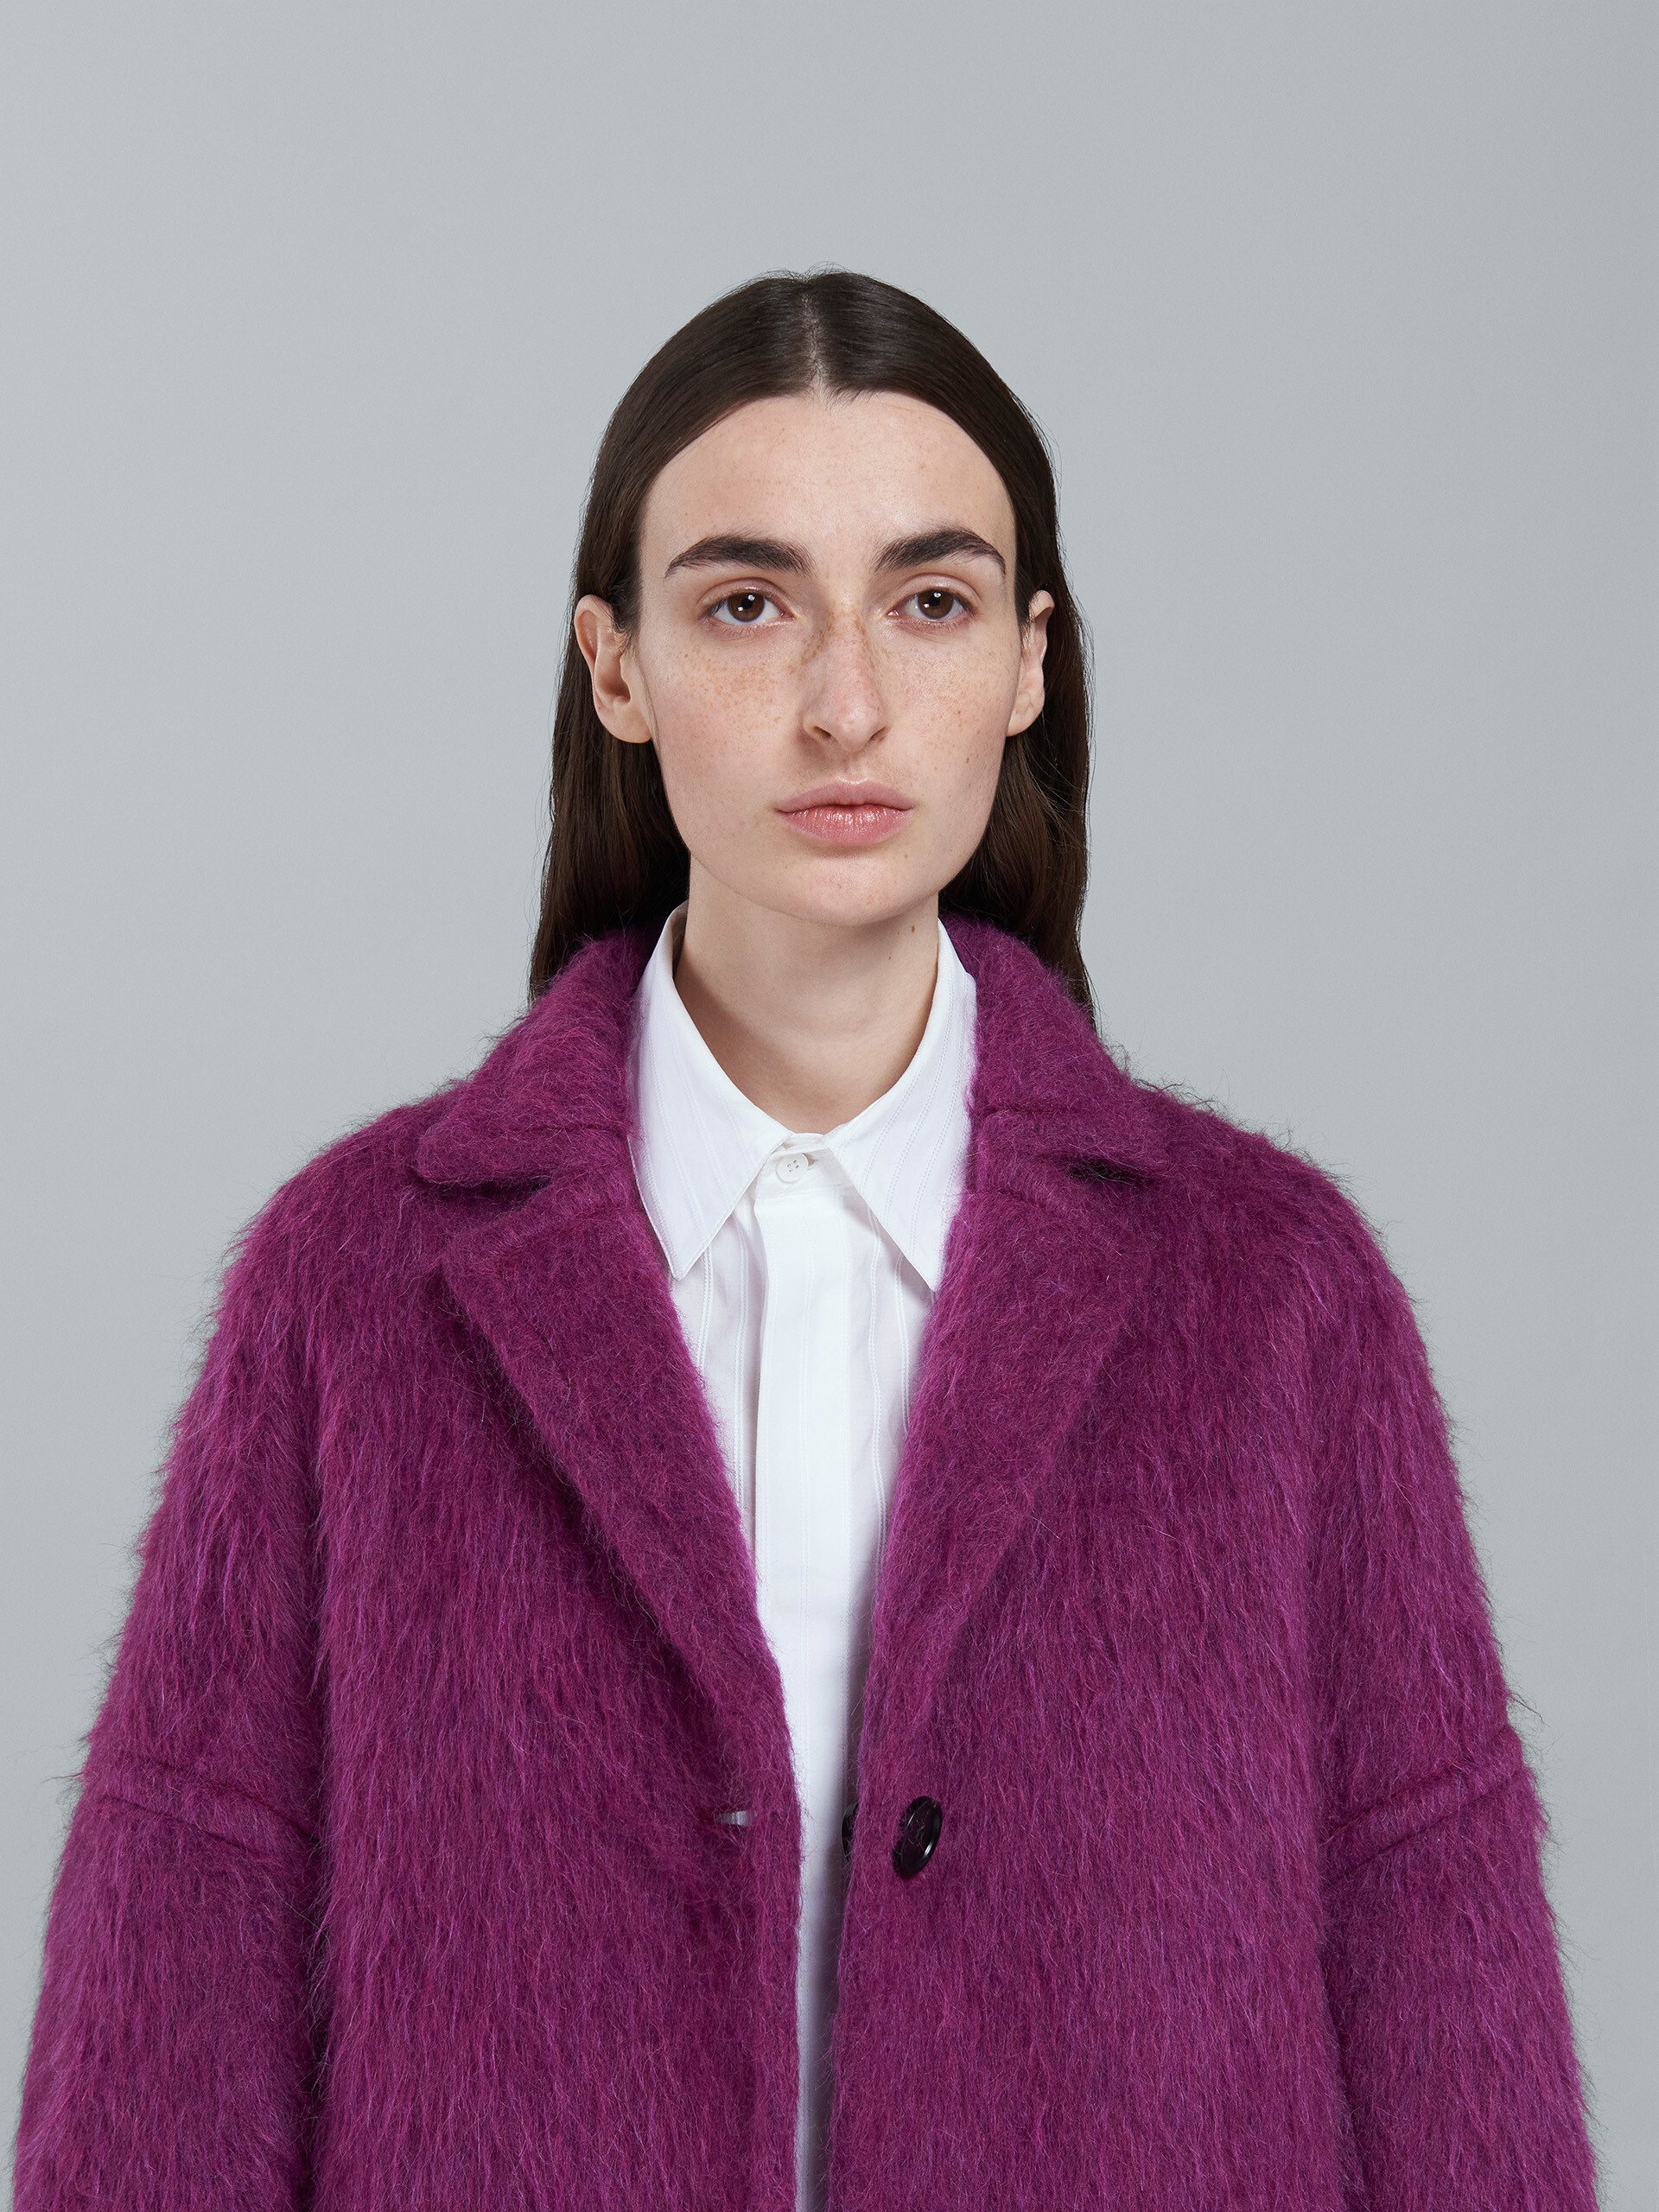 Brushed wool coat - Coat - Image 4